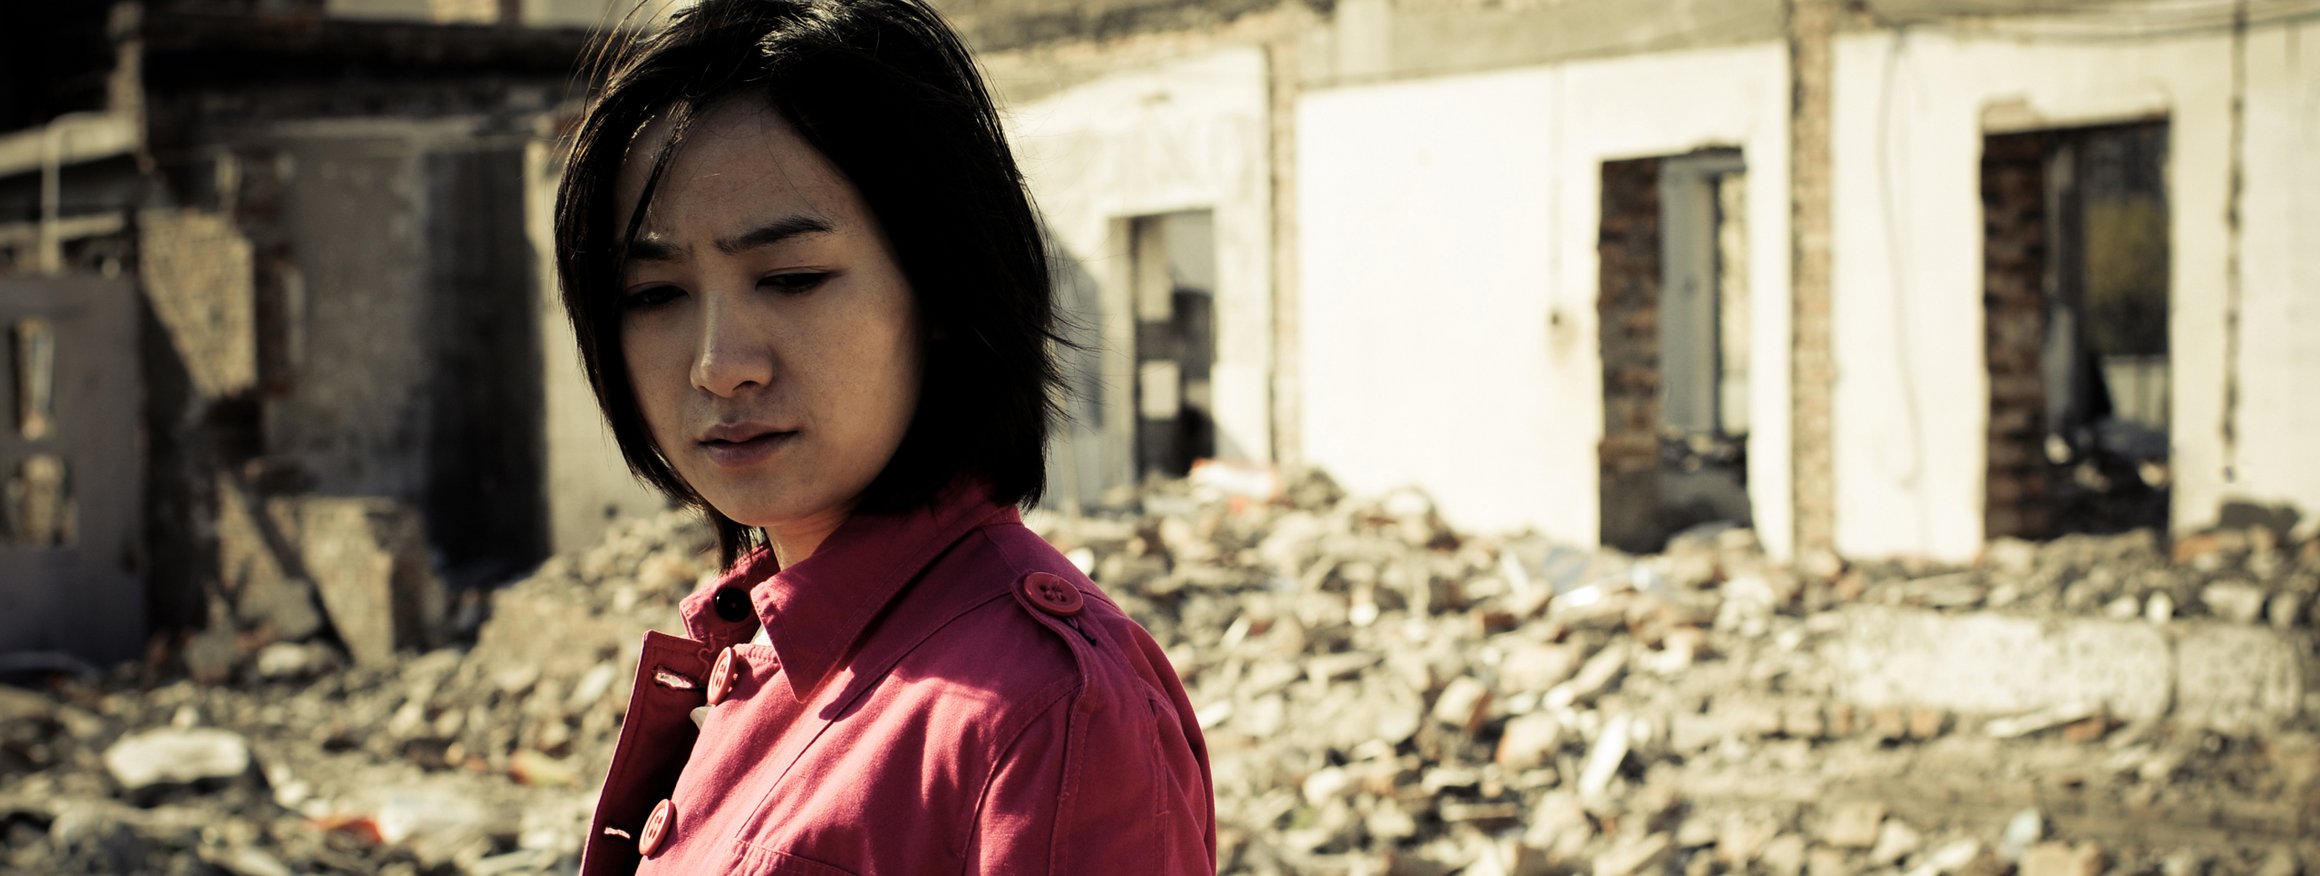 Eine junge Frau mit roter Jacke steht traurig vor einem zertrümmerten Haus